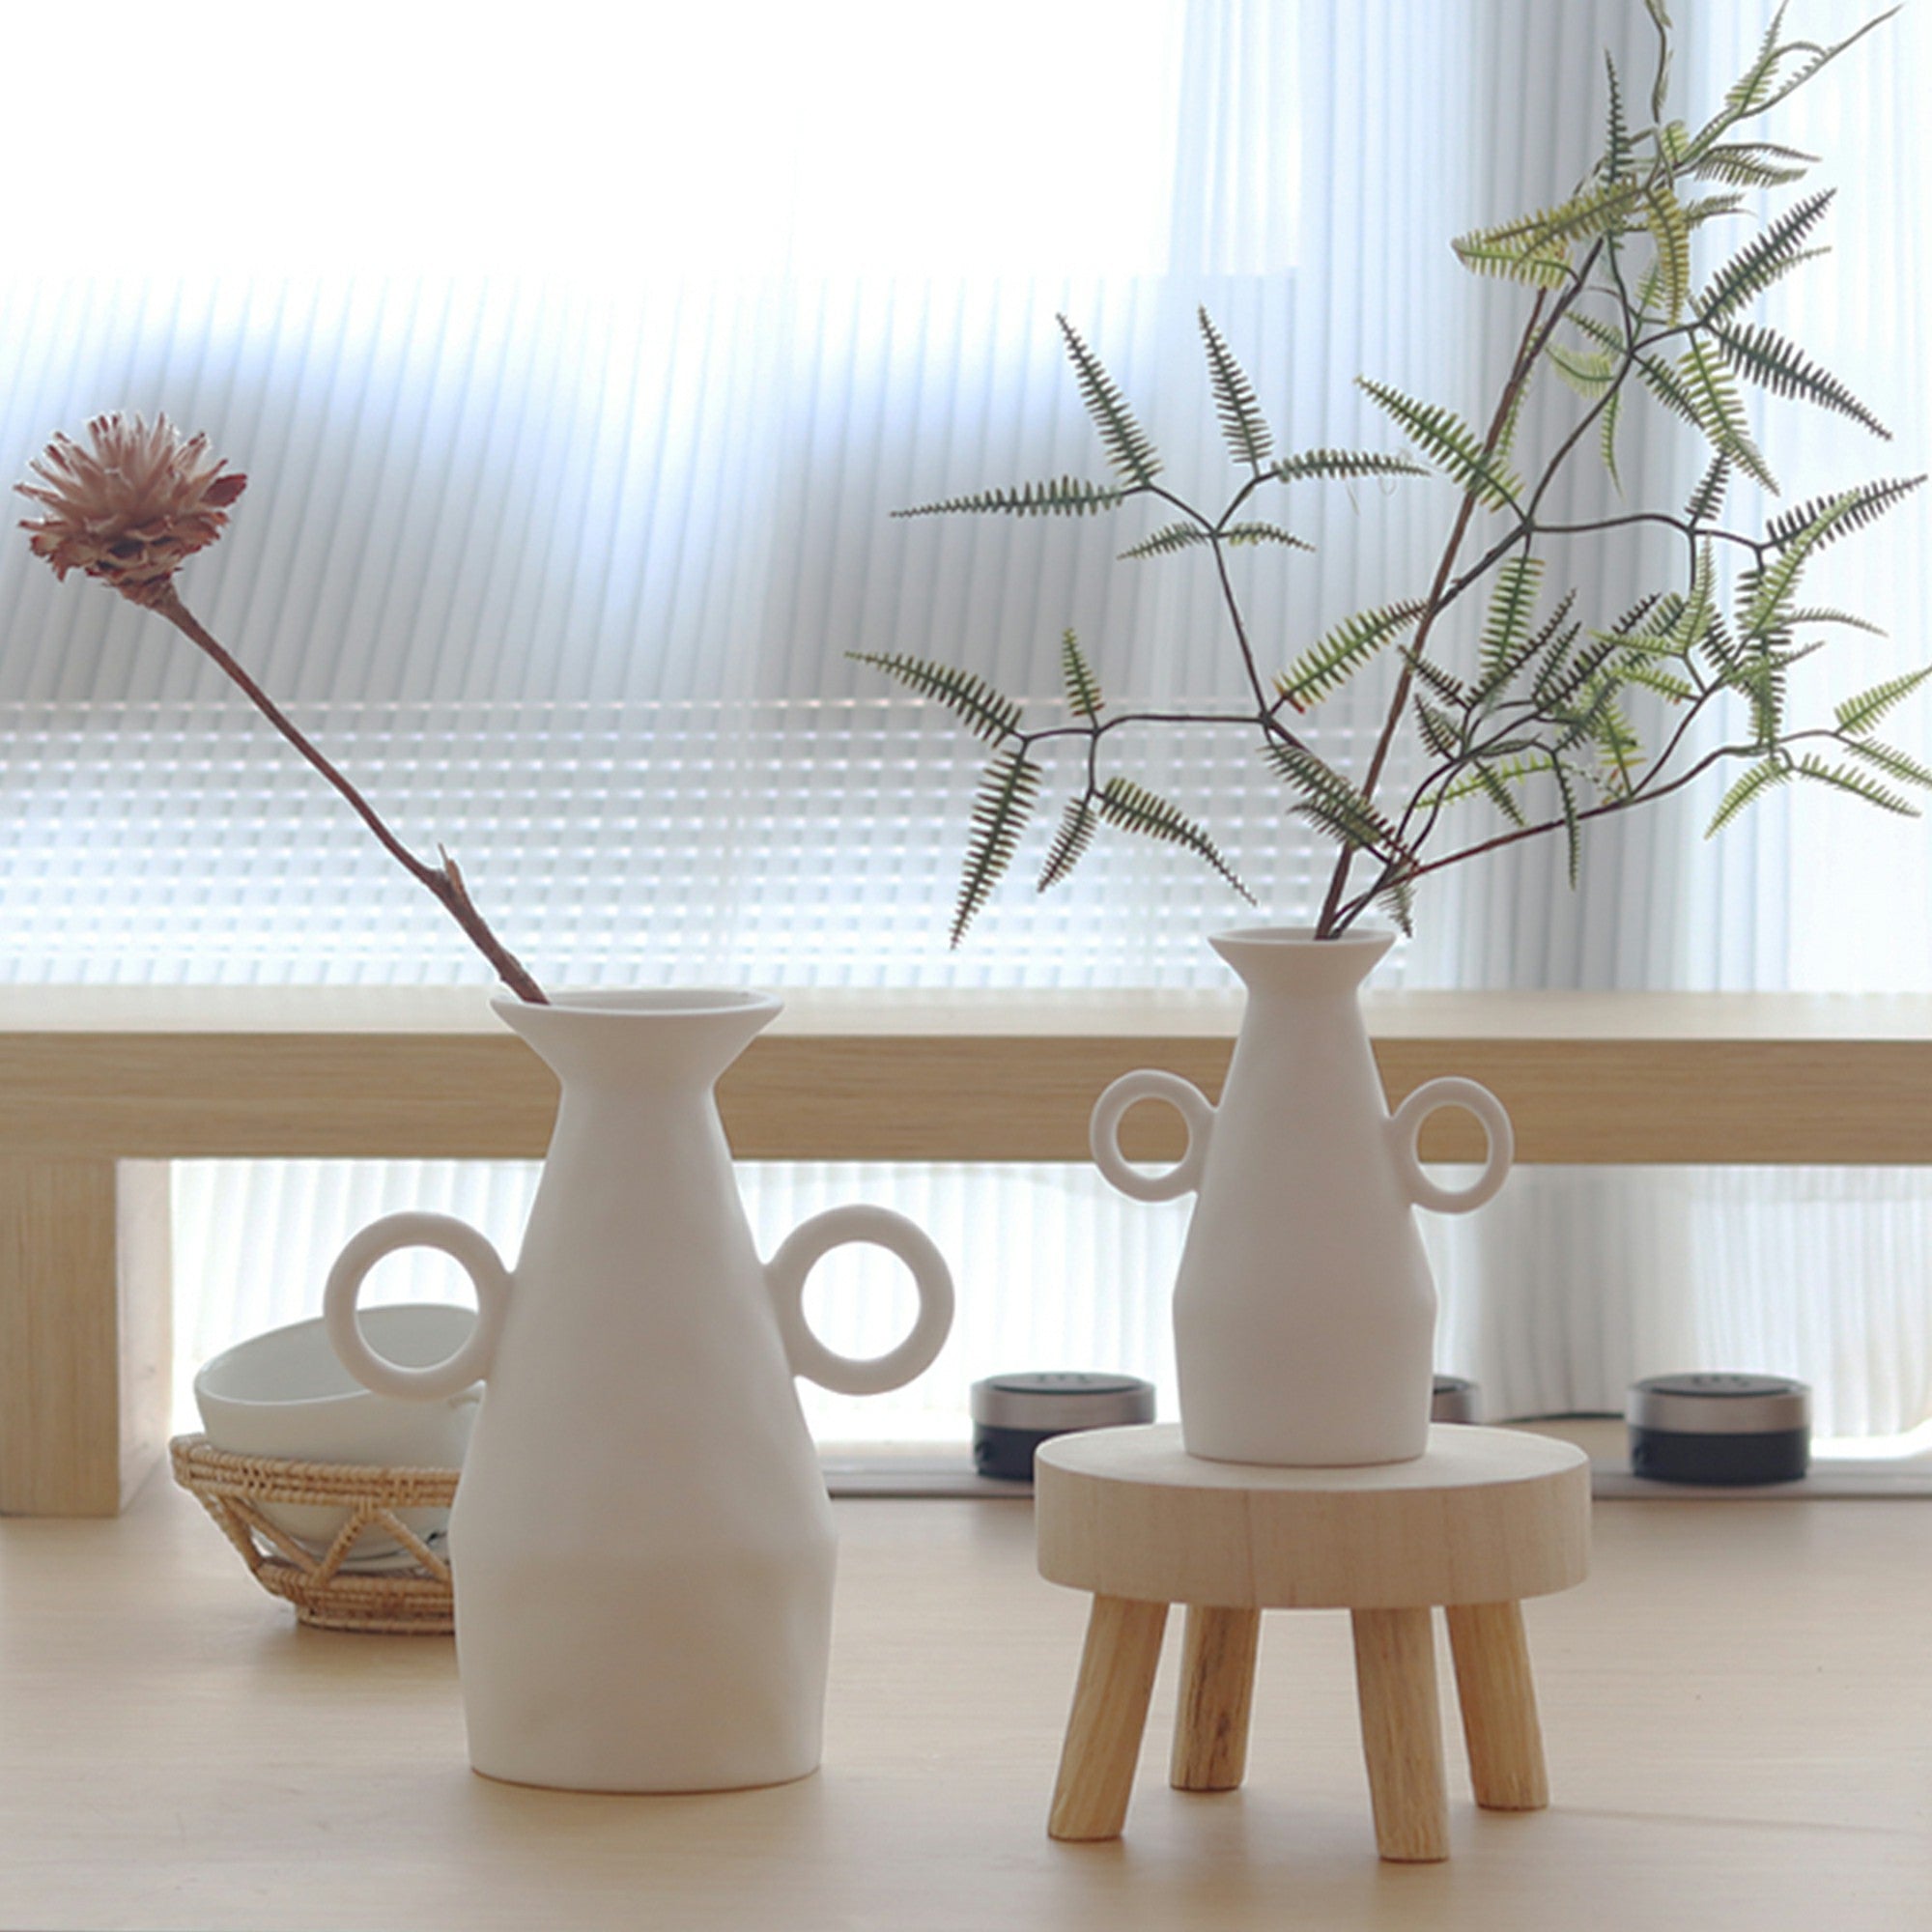 Nordic Rustic White Ceramic Vase